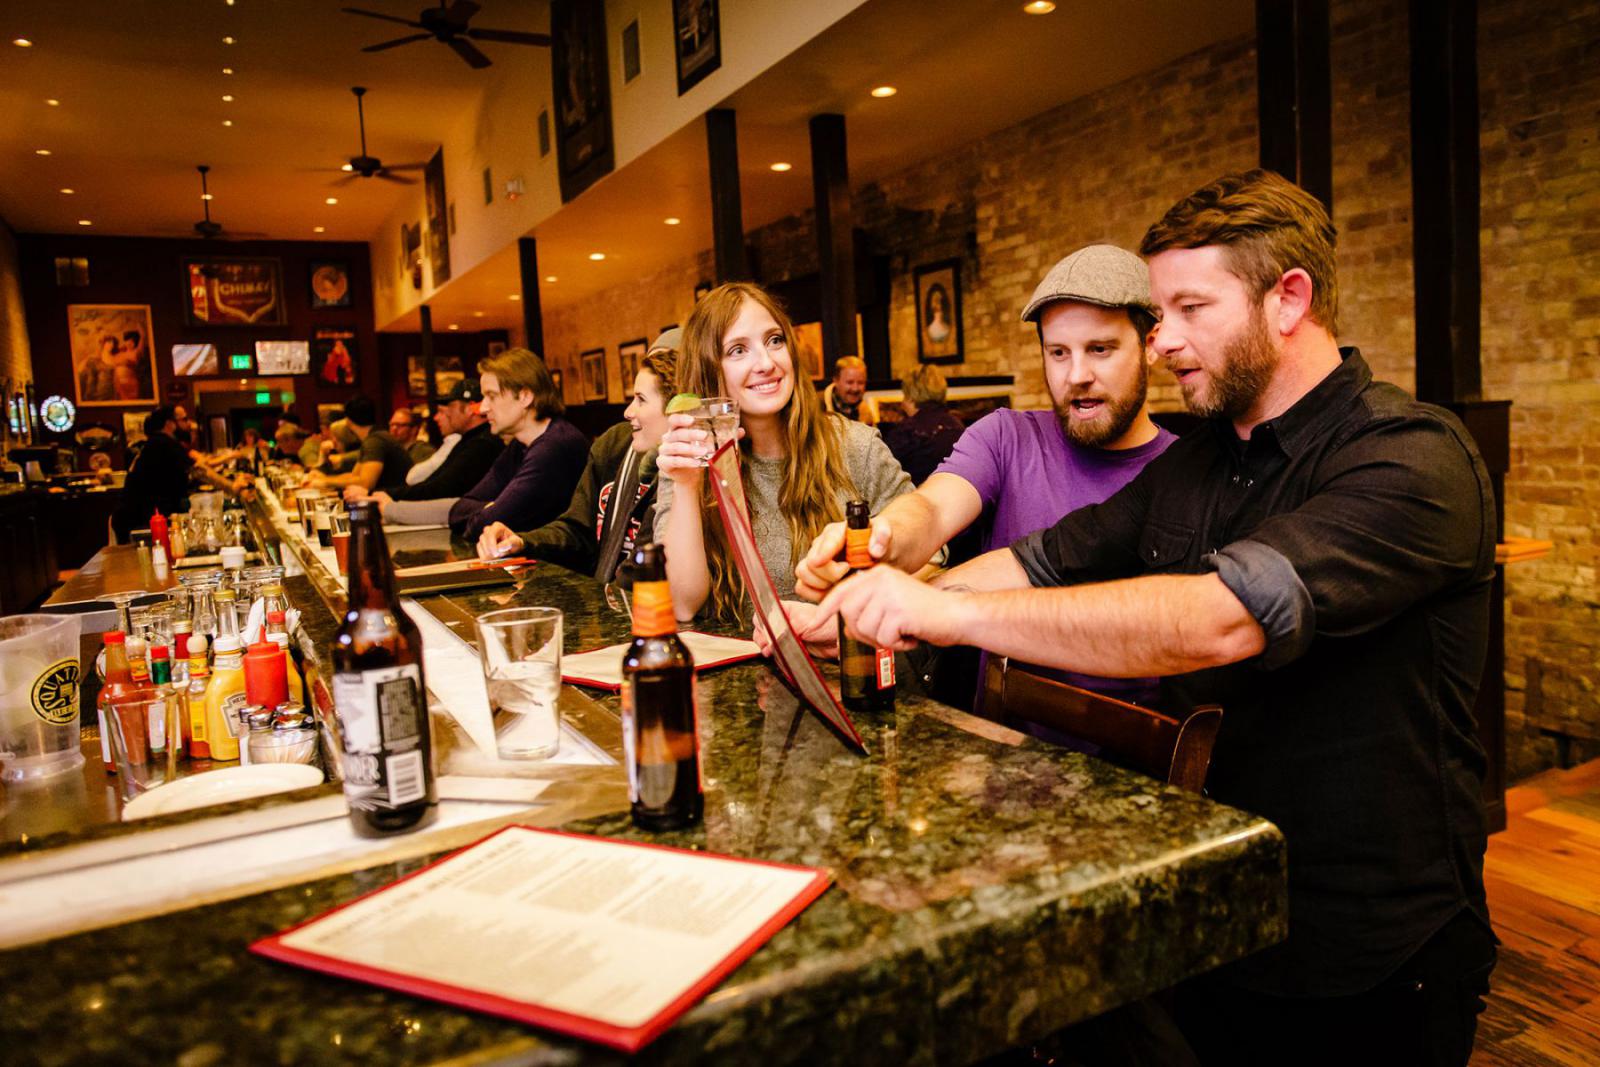 In Salt Lake City zijn voldoende plekken om gezellig een biertje te drinken met vrienden.